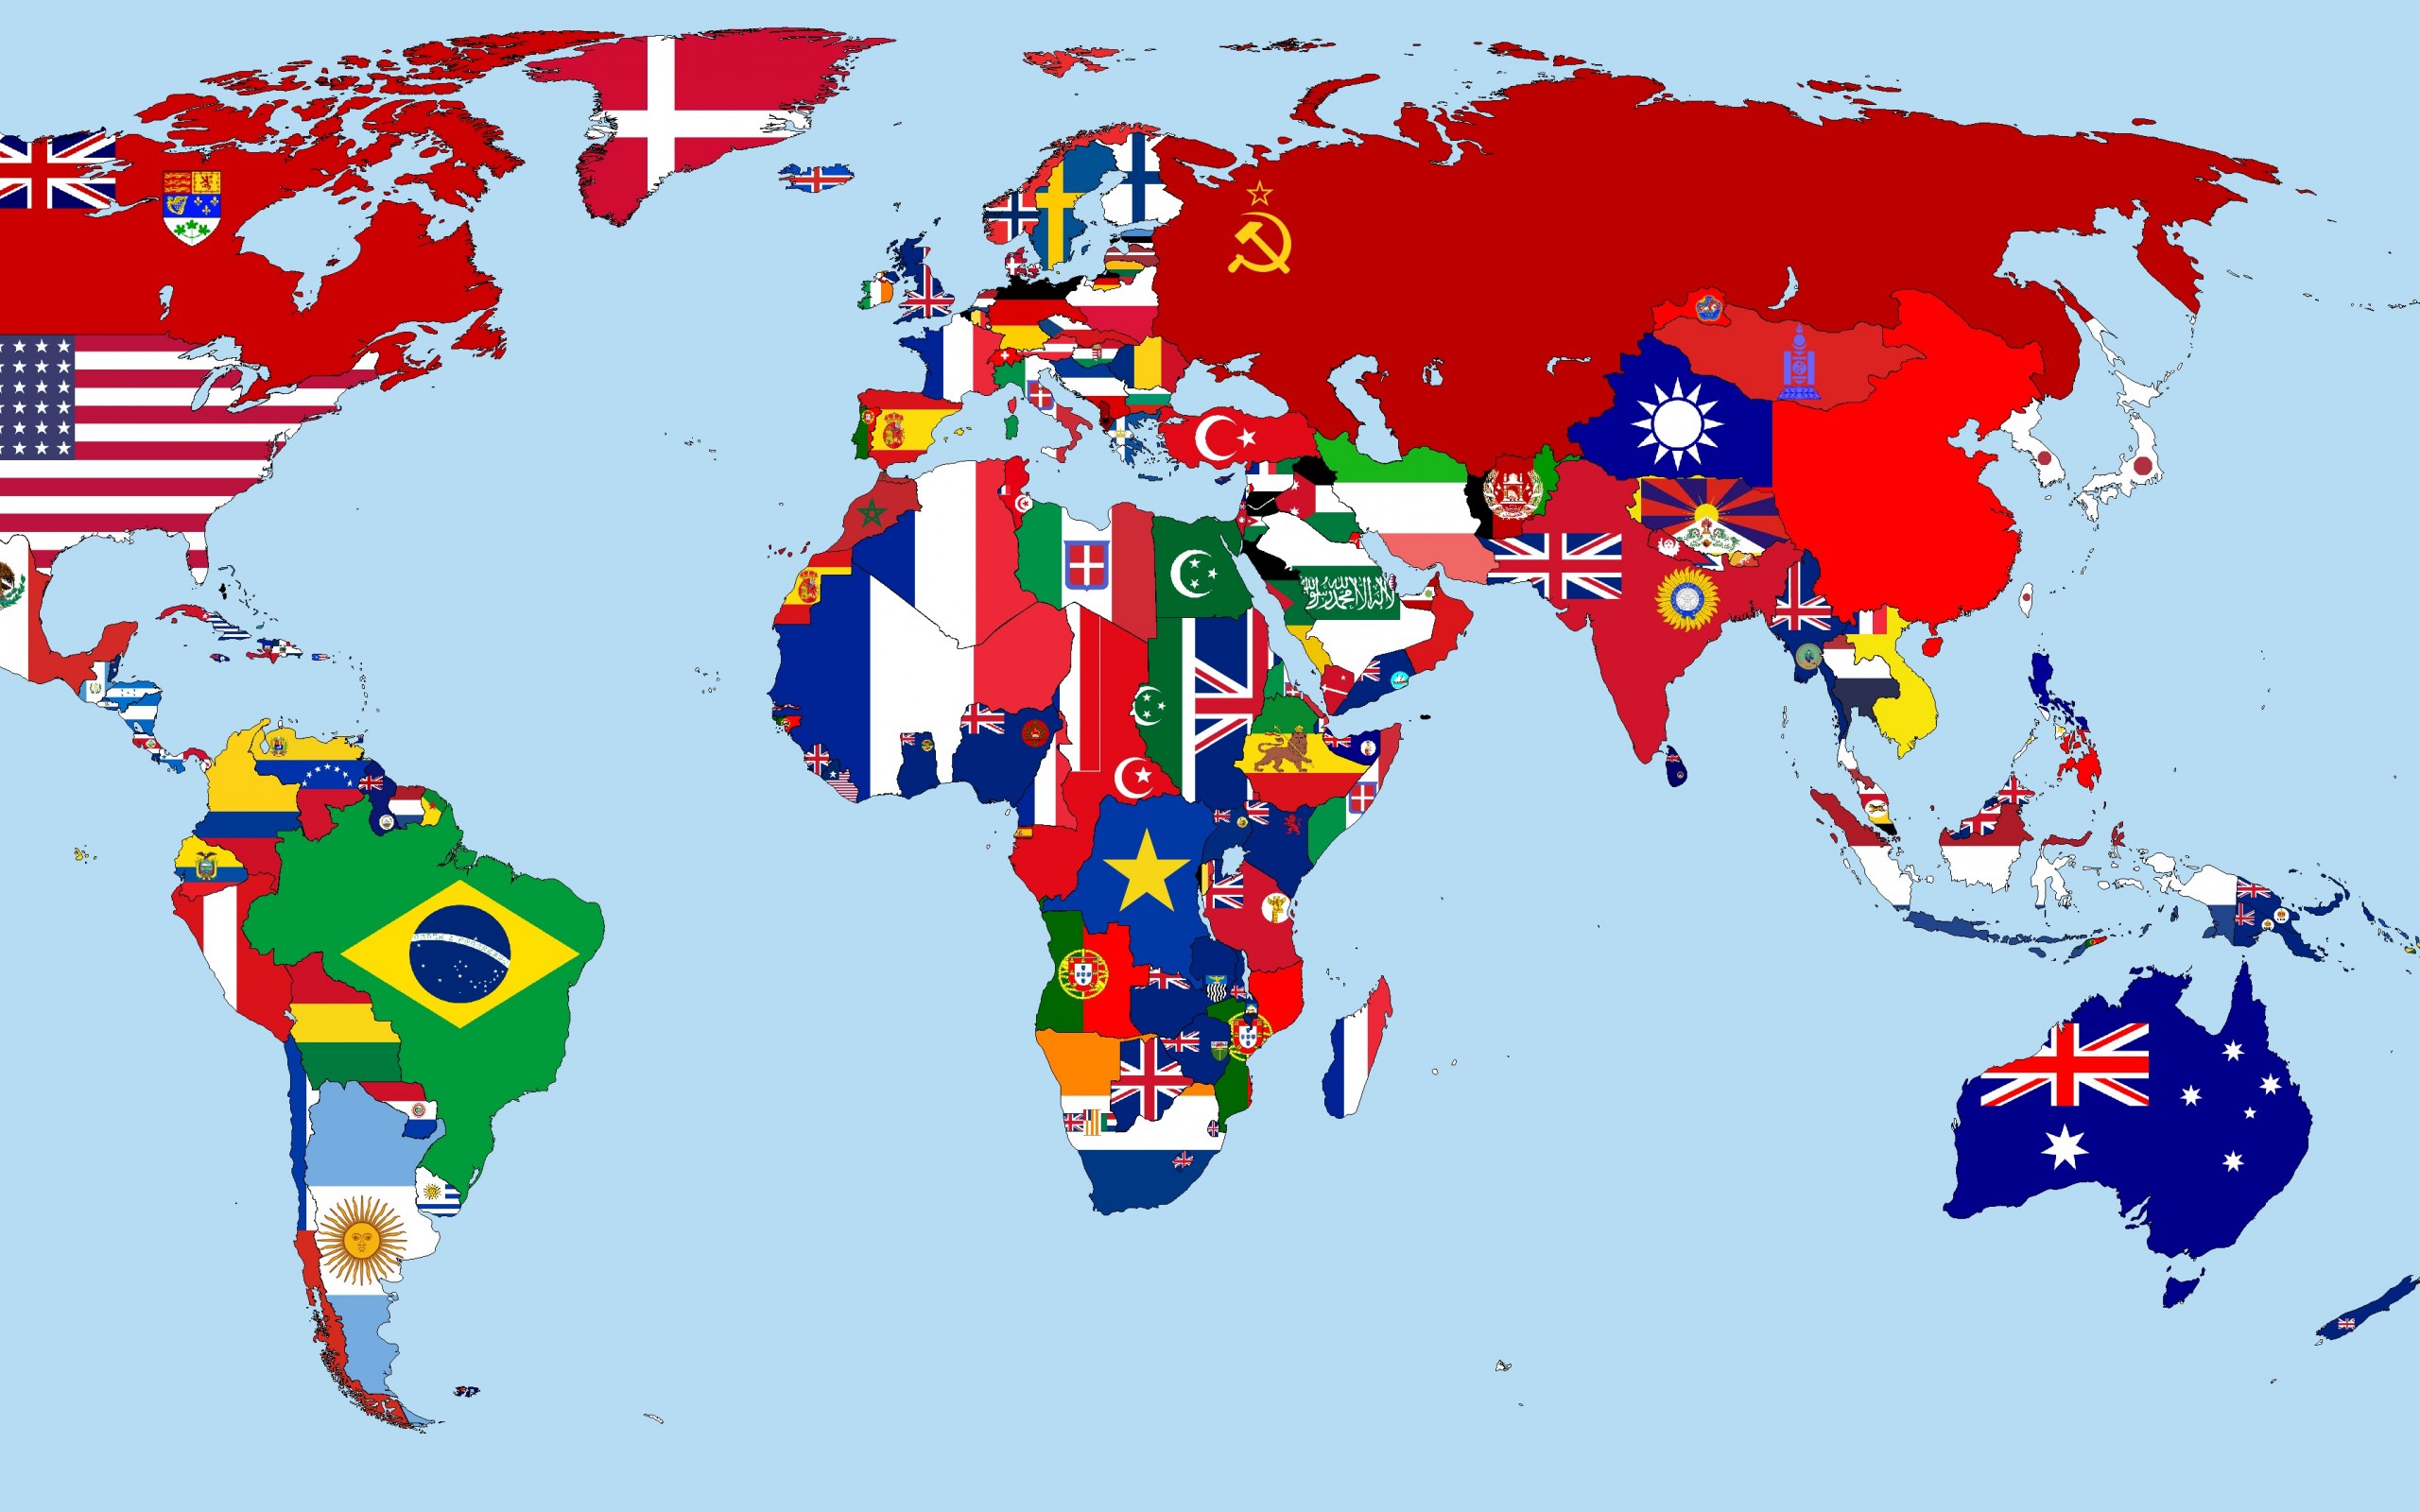 عکس پرچم کشورهای جهان با اسم